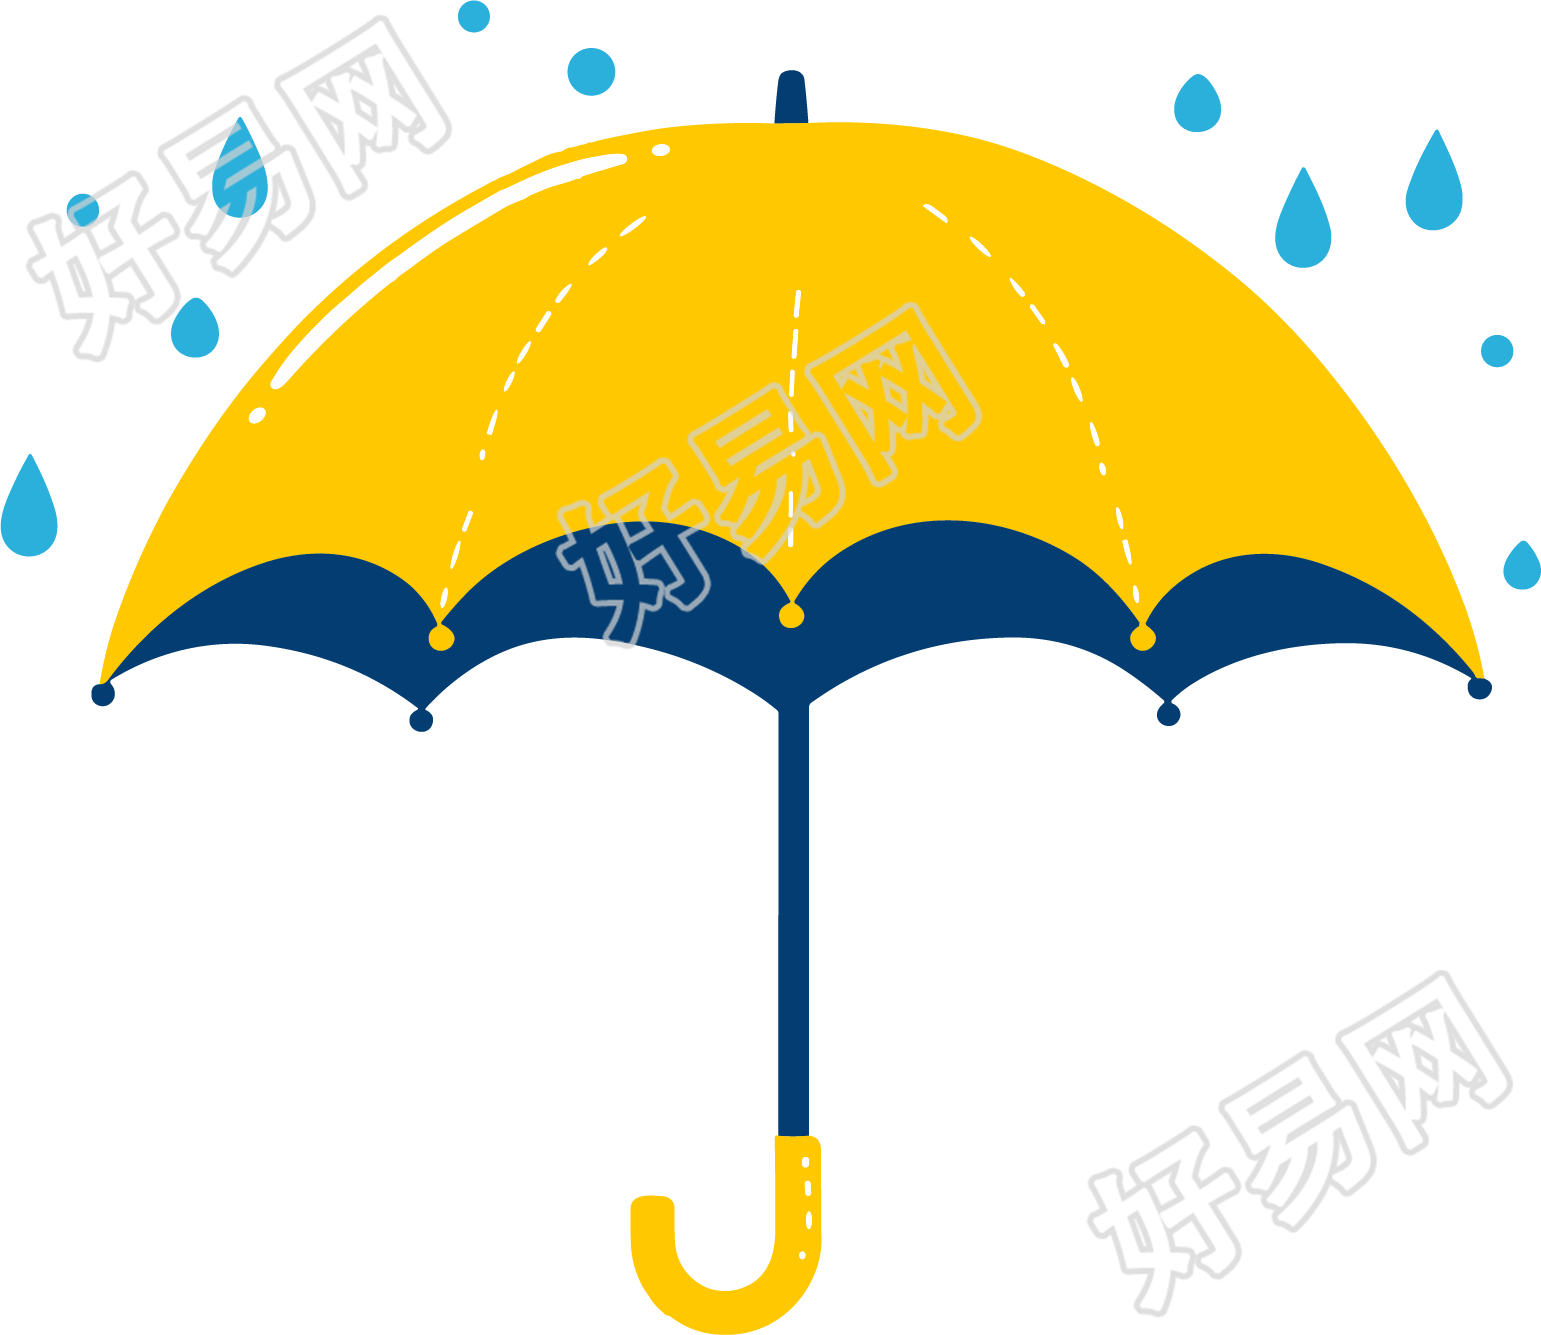 暴雨天气雨伞插图